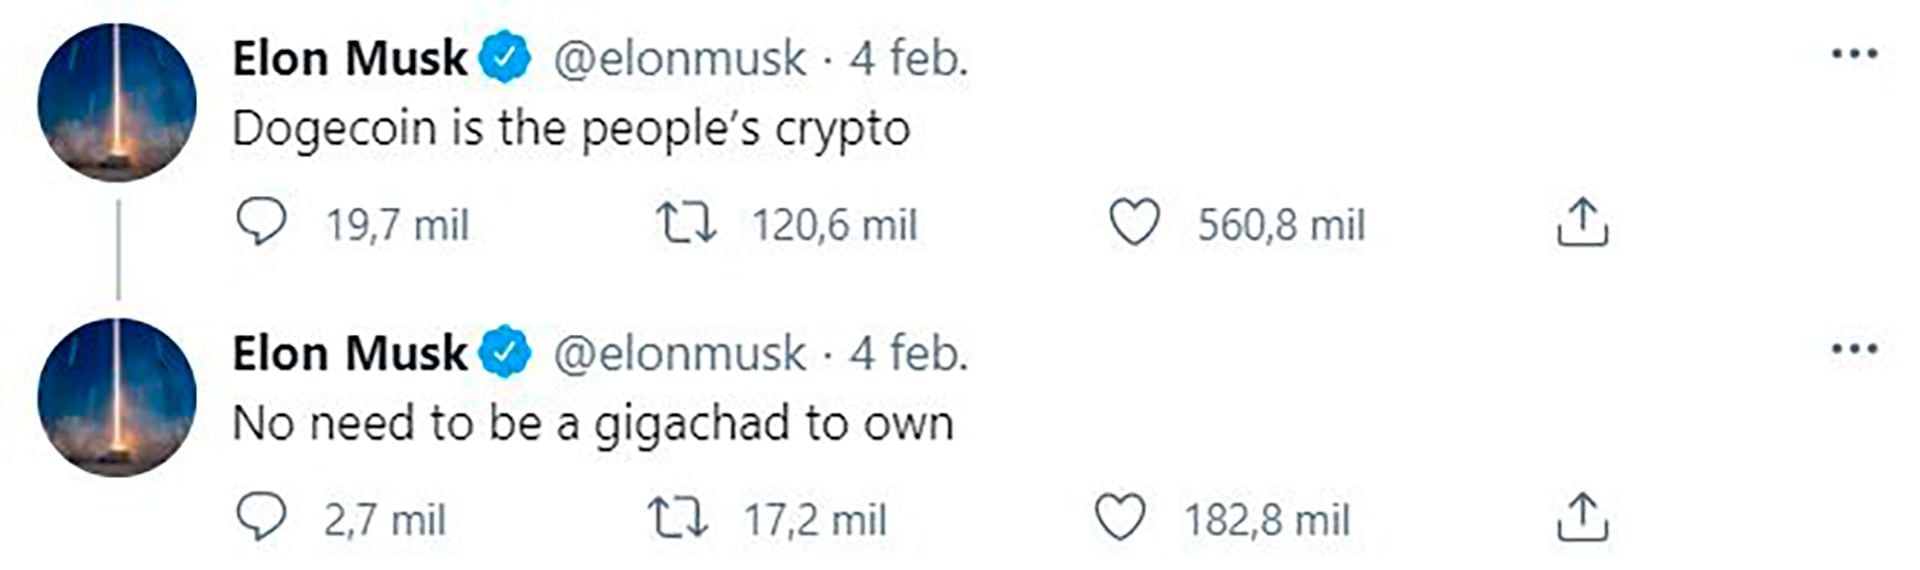 Uno de los tweets de Musk en apoyo al Dogecoin